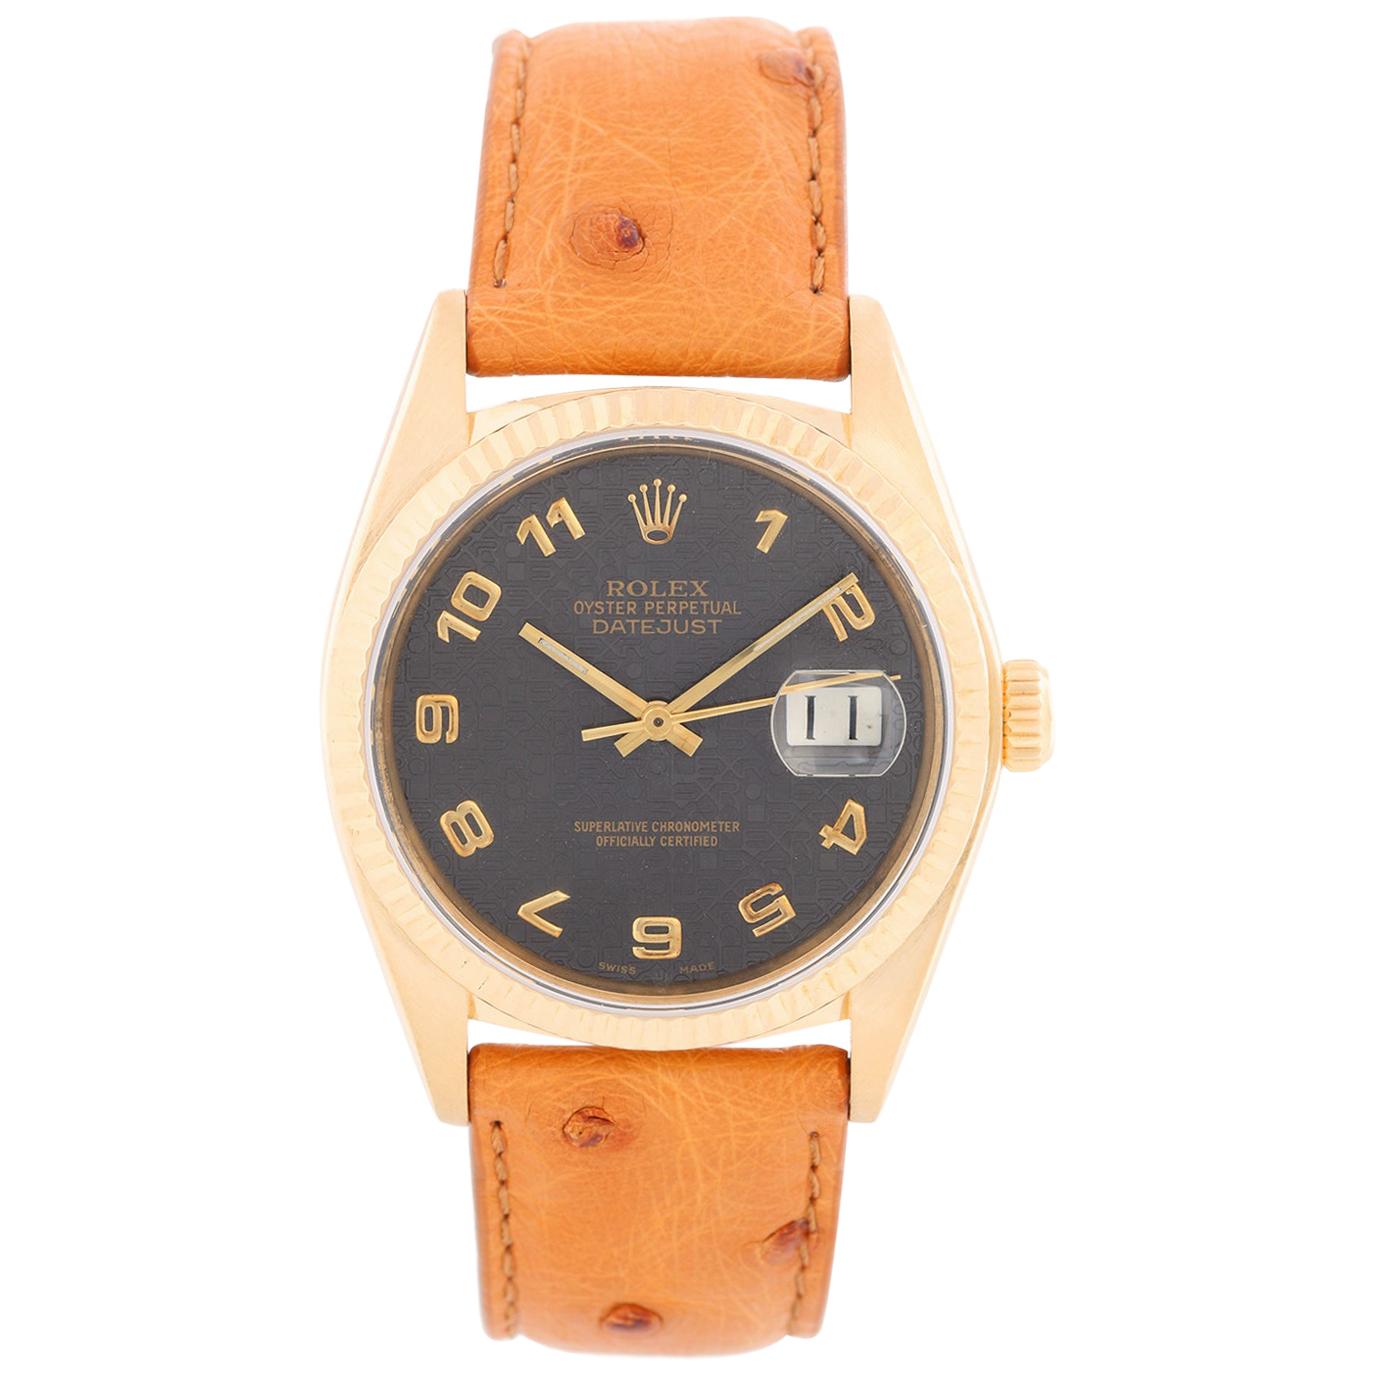 Rolex Datejust Men's 18 Karat Watch 16018